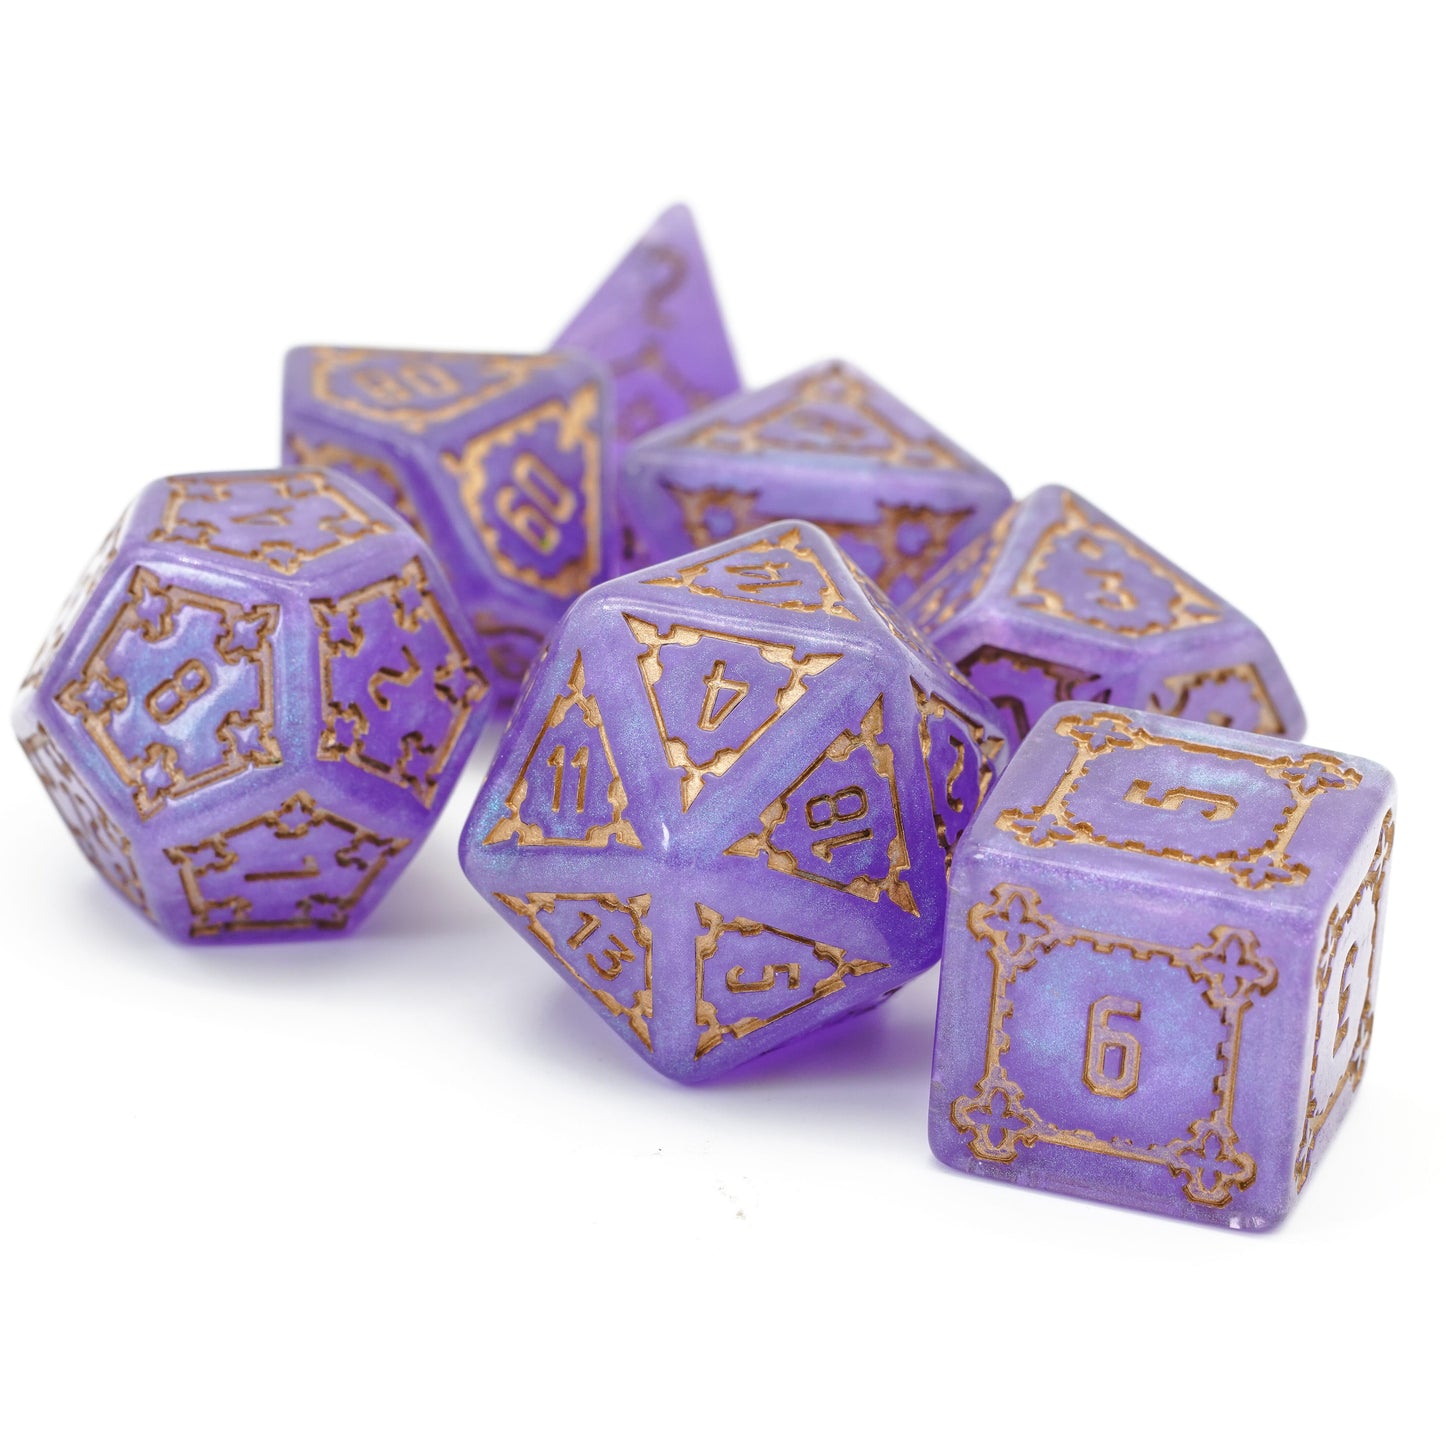 Violet elixir huge dice set on white background